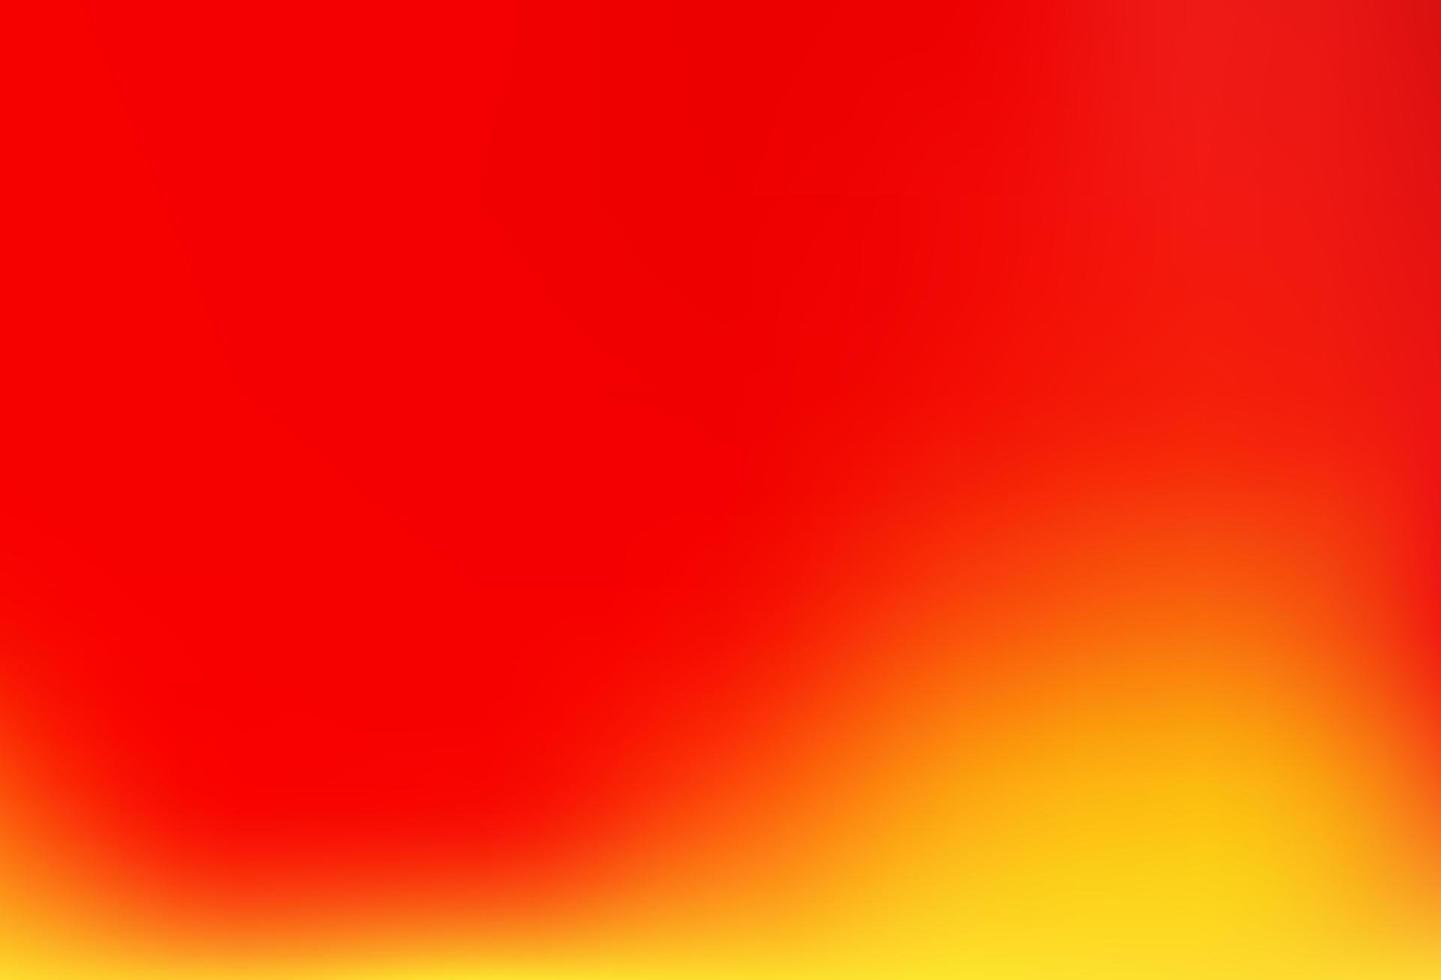 sfondo astratto lucido vettoriale rosso chiaro, giallo.